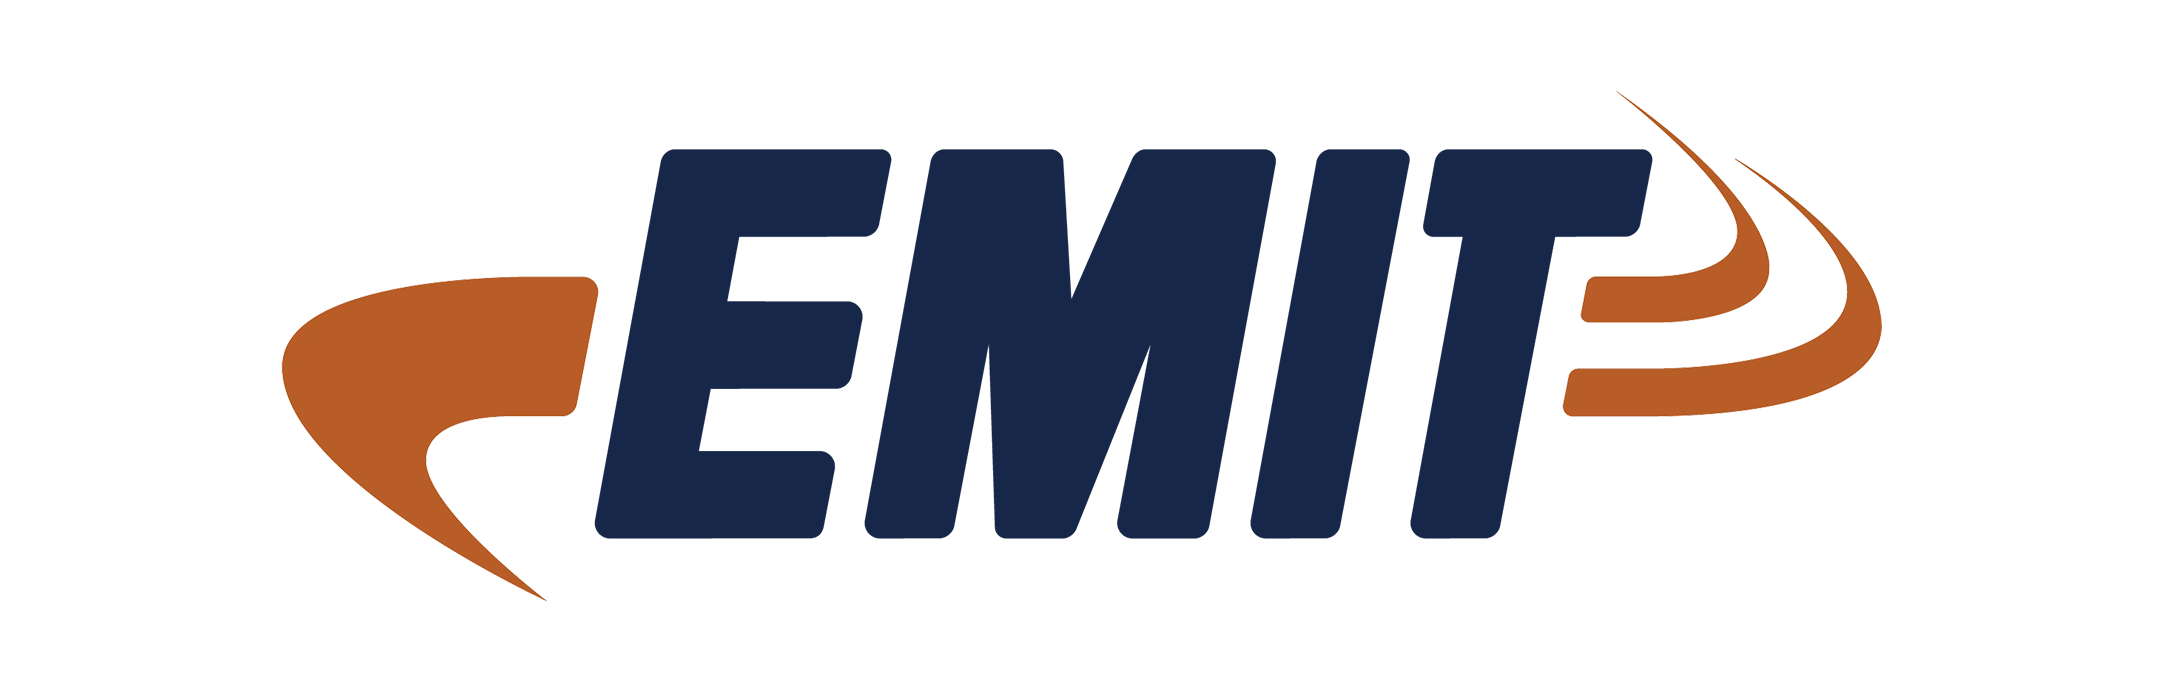 EMIT Technologies